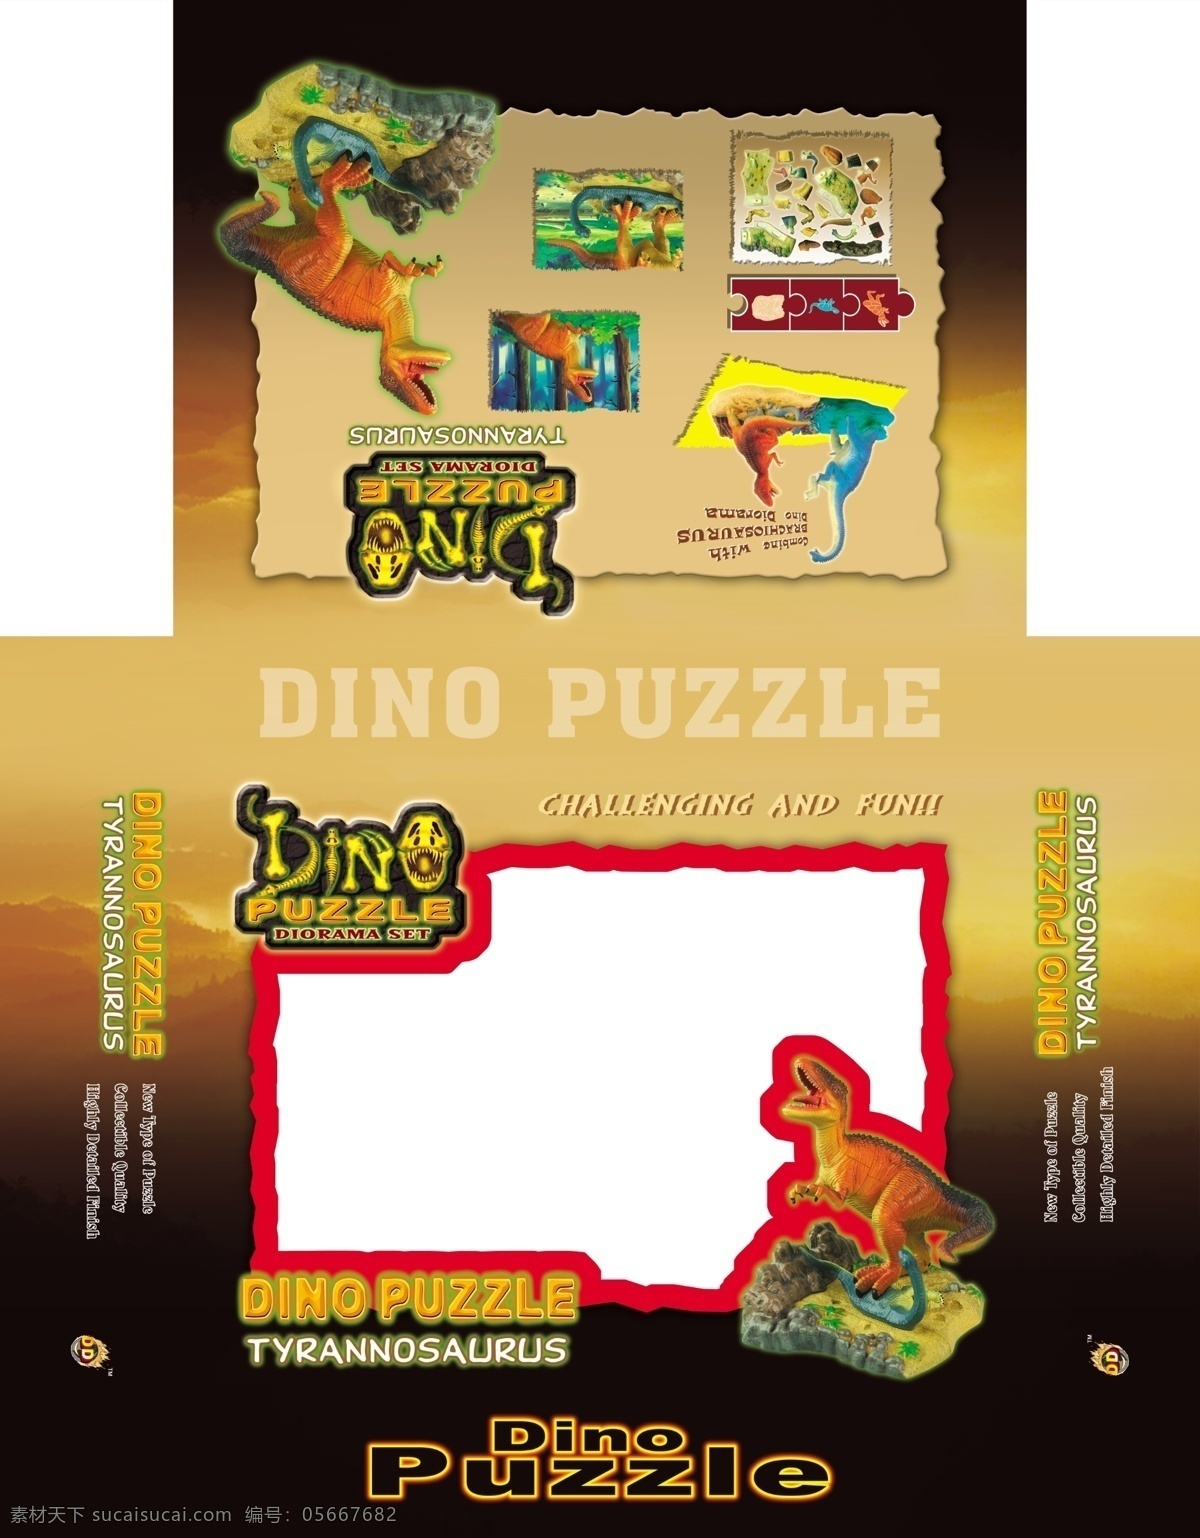 包装盒 包装设计 广告设计模板 恐龙 源文件 模板下载 恐龙包装盒 玩具 玩具包装盒 psd源文件